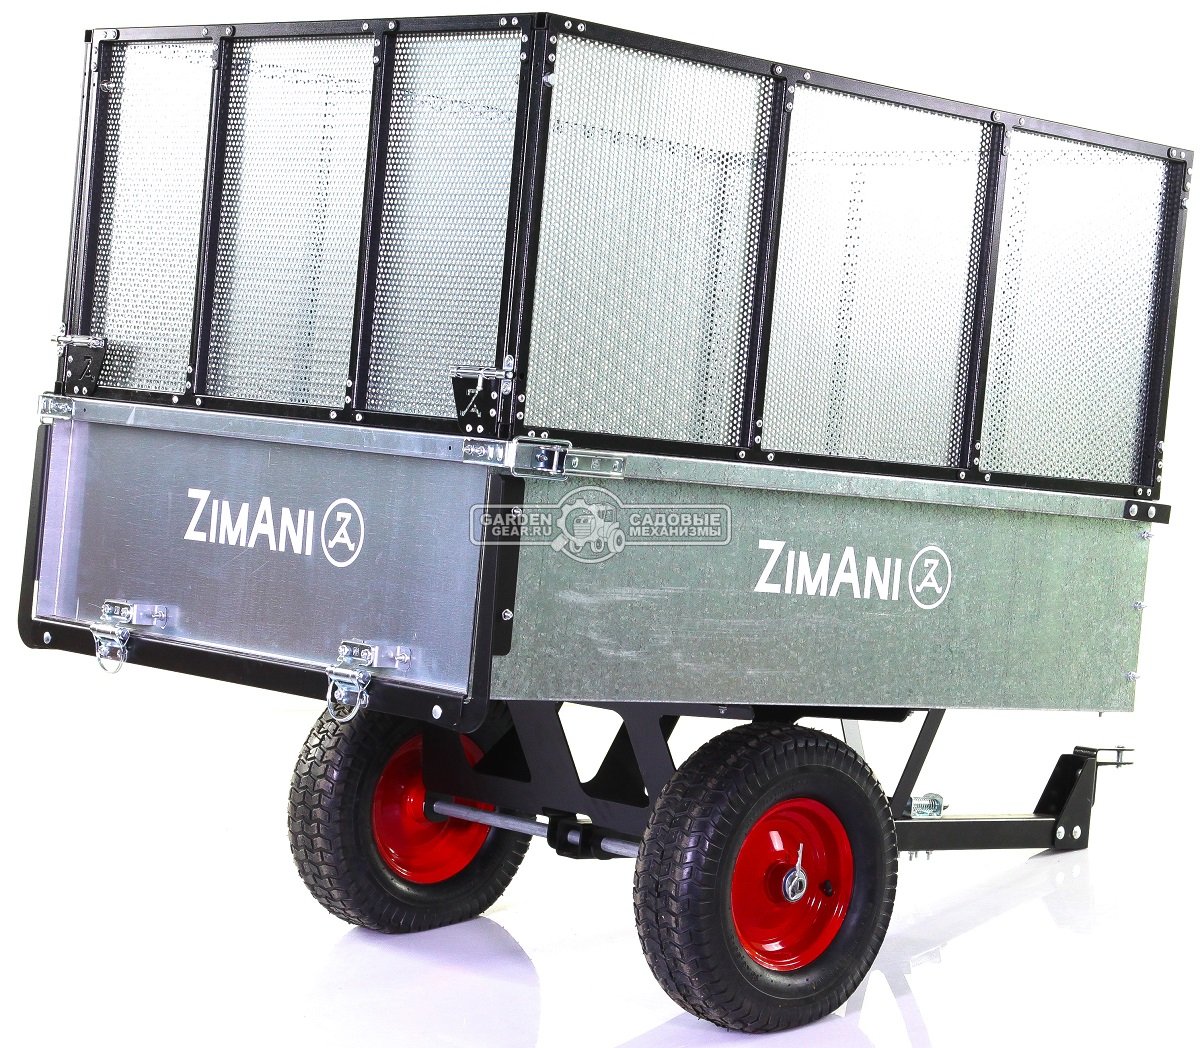 Тележка - прицеп ZimAni Stainless steel 500S с бортами для садовых тракторов, с механизмом опрокидывания (оцинкованной сталь, 500 кг)